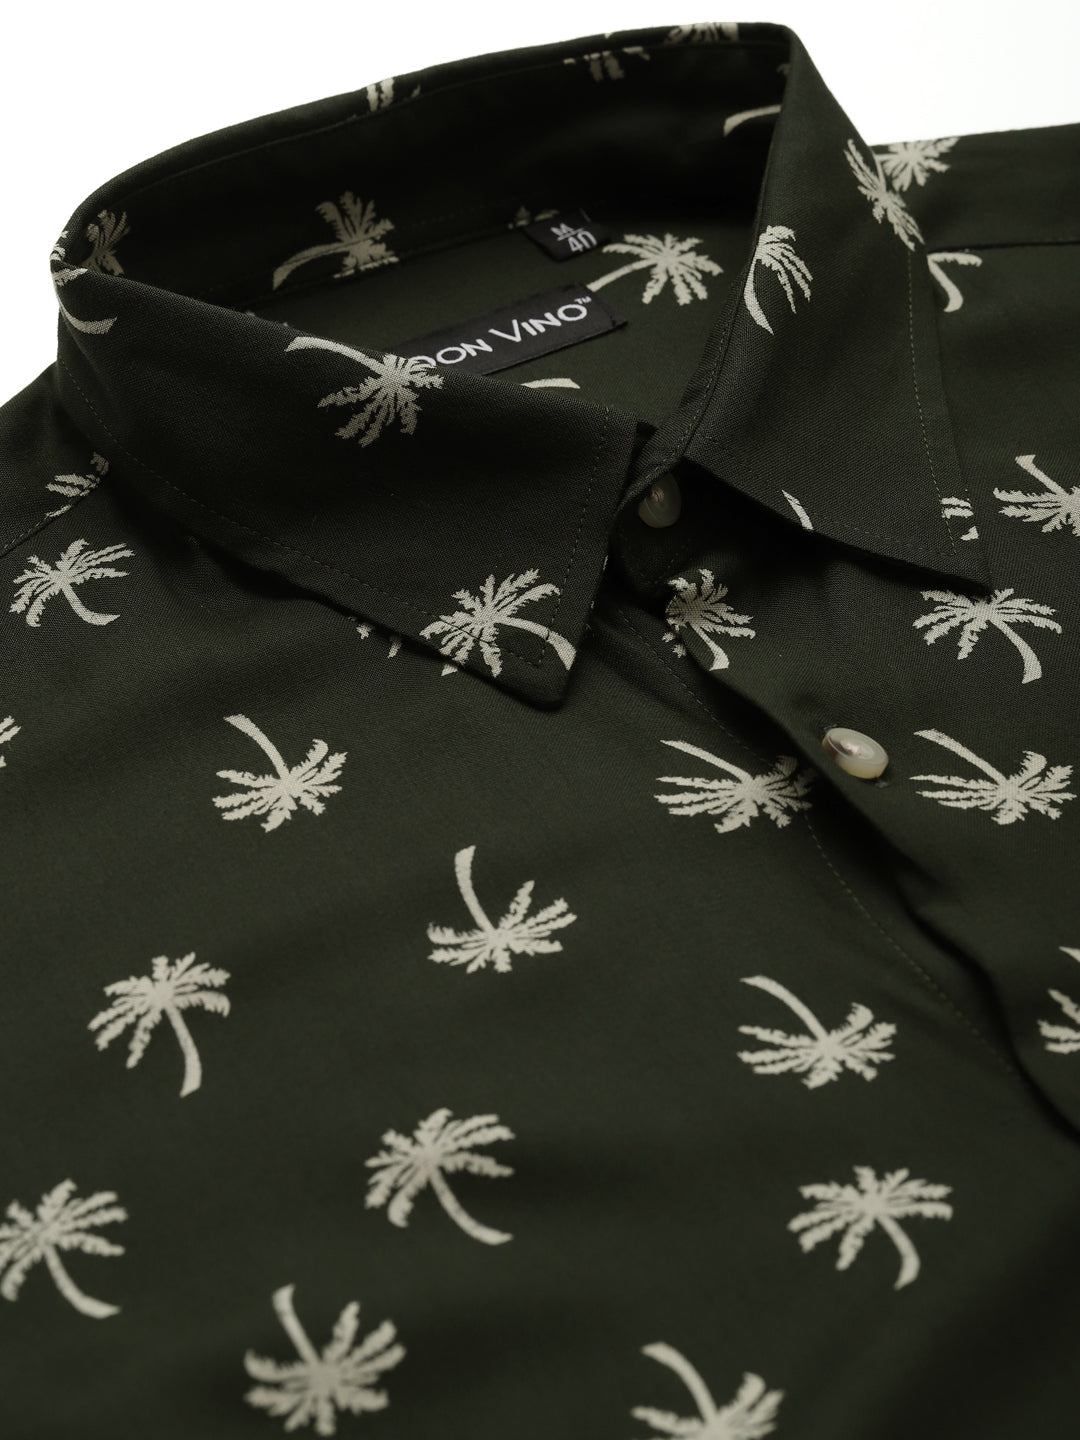 Don Vino Men's Tropical Printed Black Slim Fit Shirt